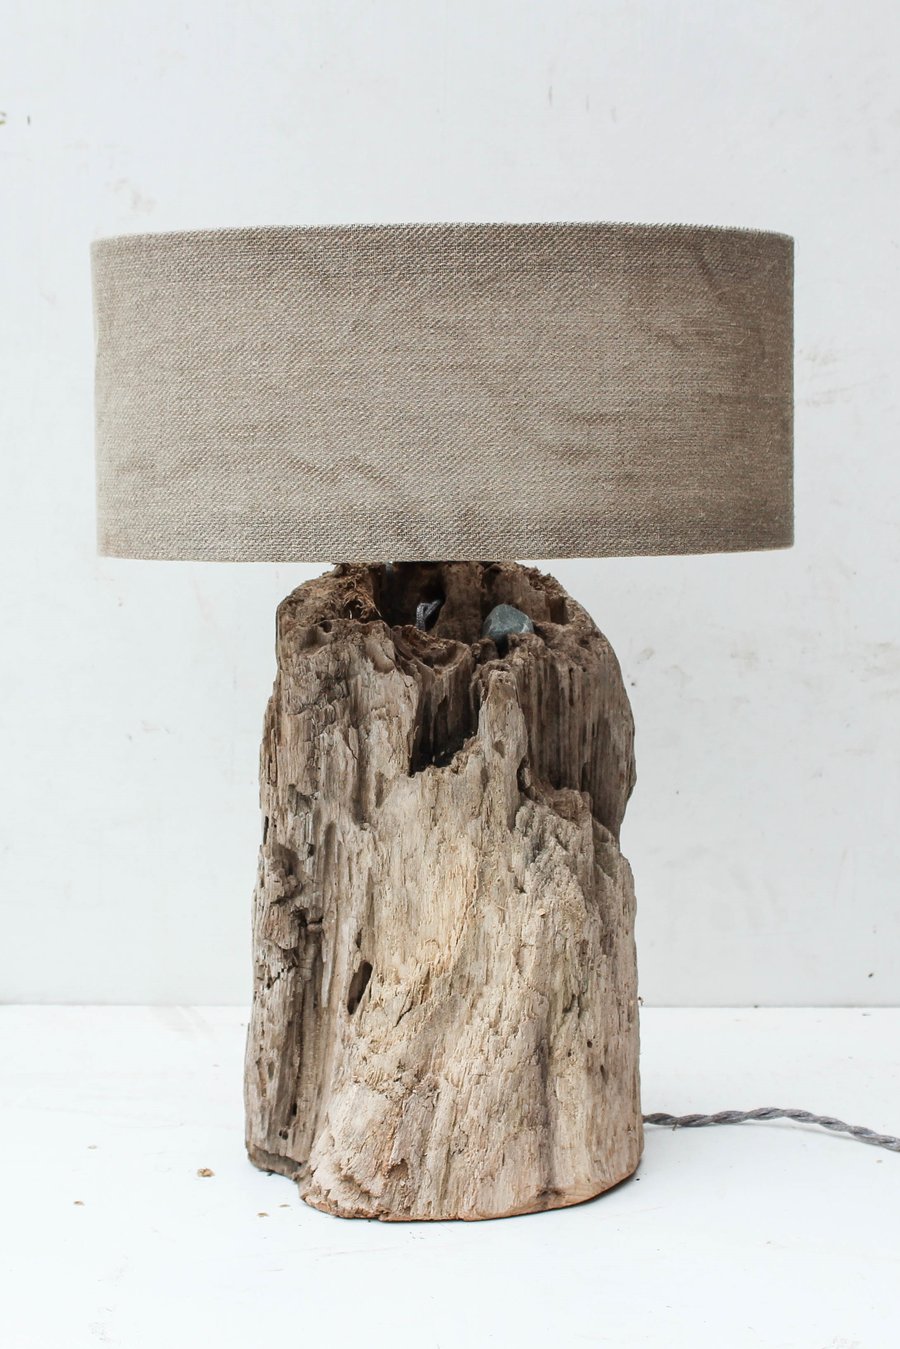 Driftwood Lamp,Rustic trunk wood Lamp,Drift Wood Lamp,Table Lamp 